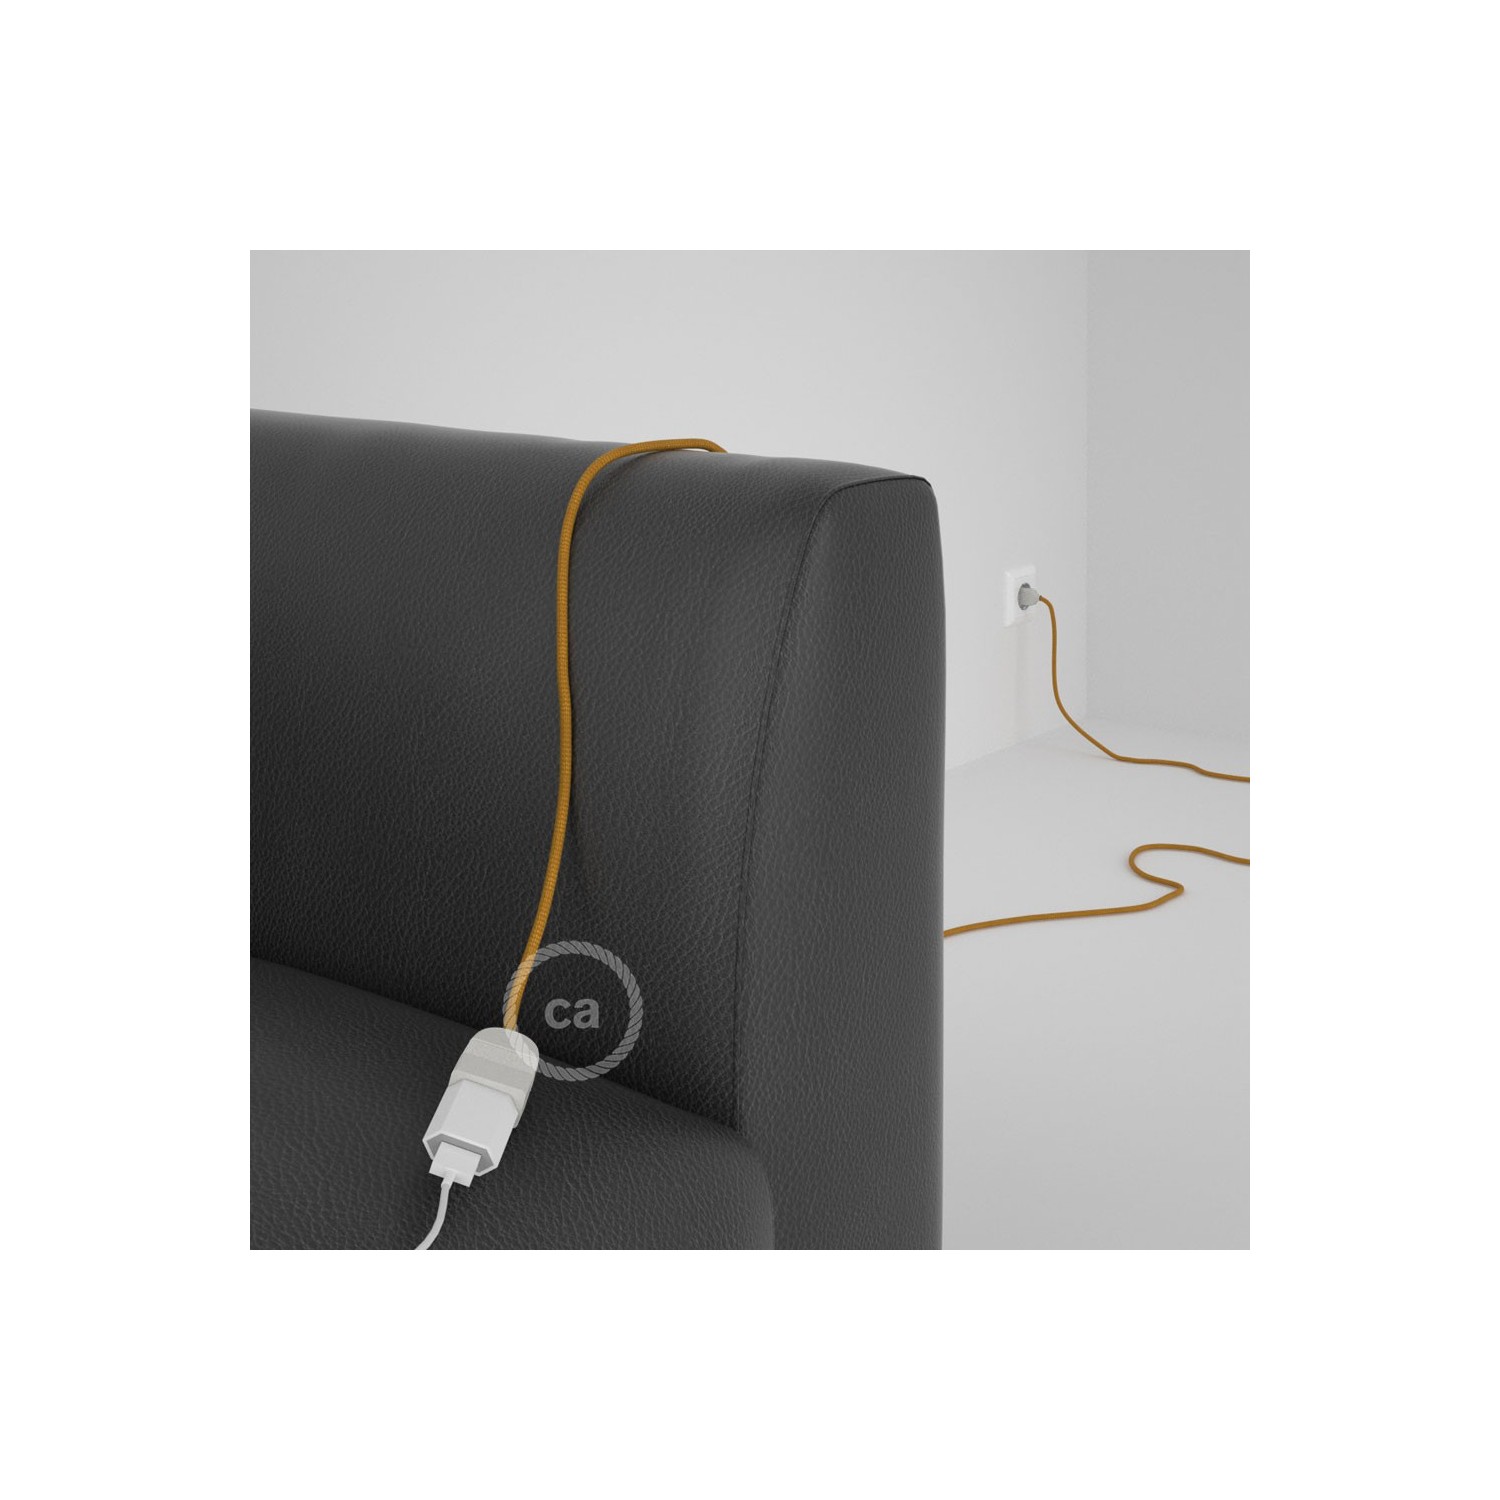 Podaljševalni kabel za napajanje (2P 10A) zlat rejon RM05 - Made in Italy